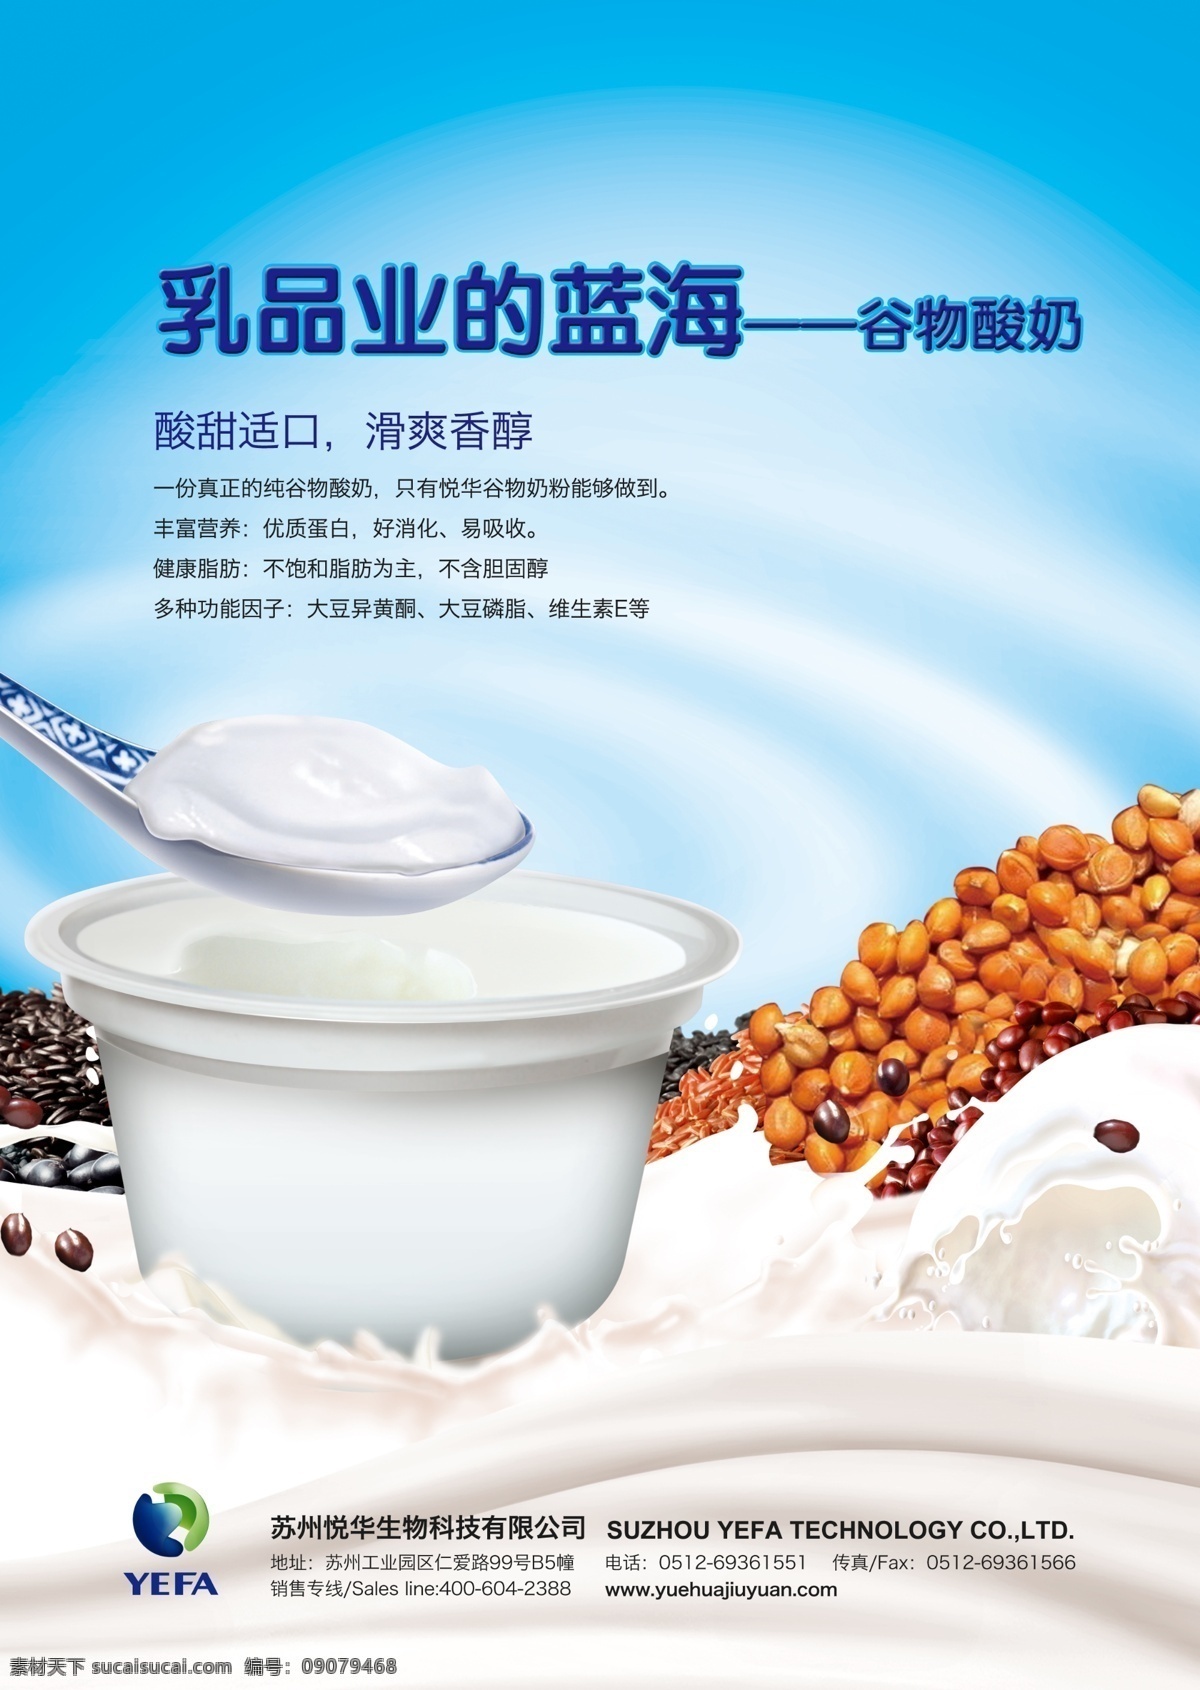 谷物酸奶 老酸奶 黄豆 豆制奶 牛奶 乳品 蓝海 红豆 花生 小米 栗米 瓷勺 广告设计模板 源文件